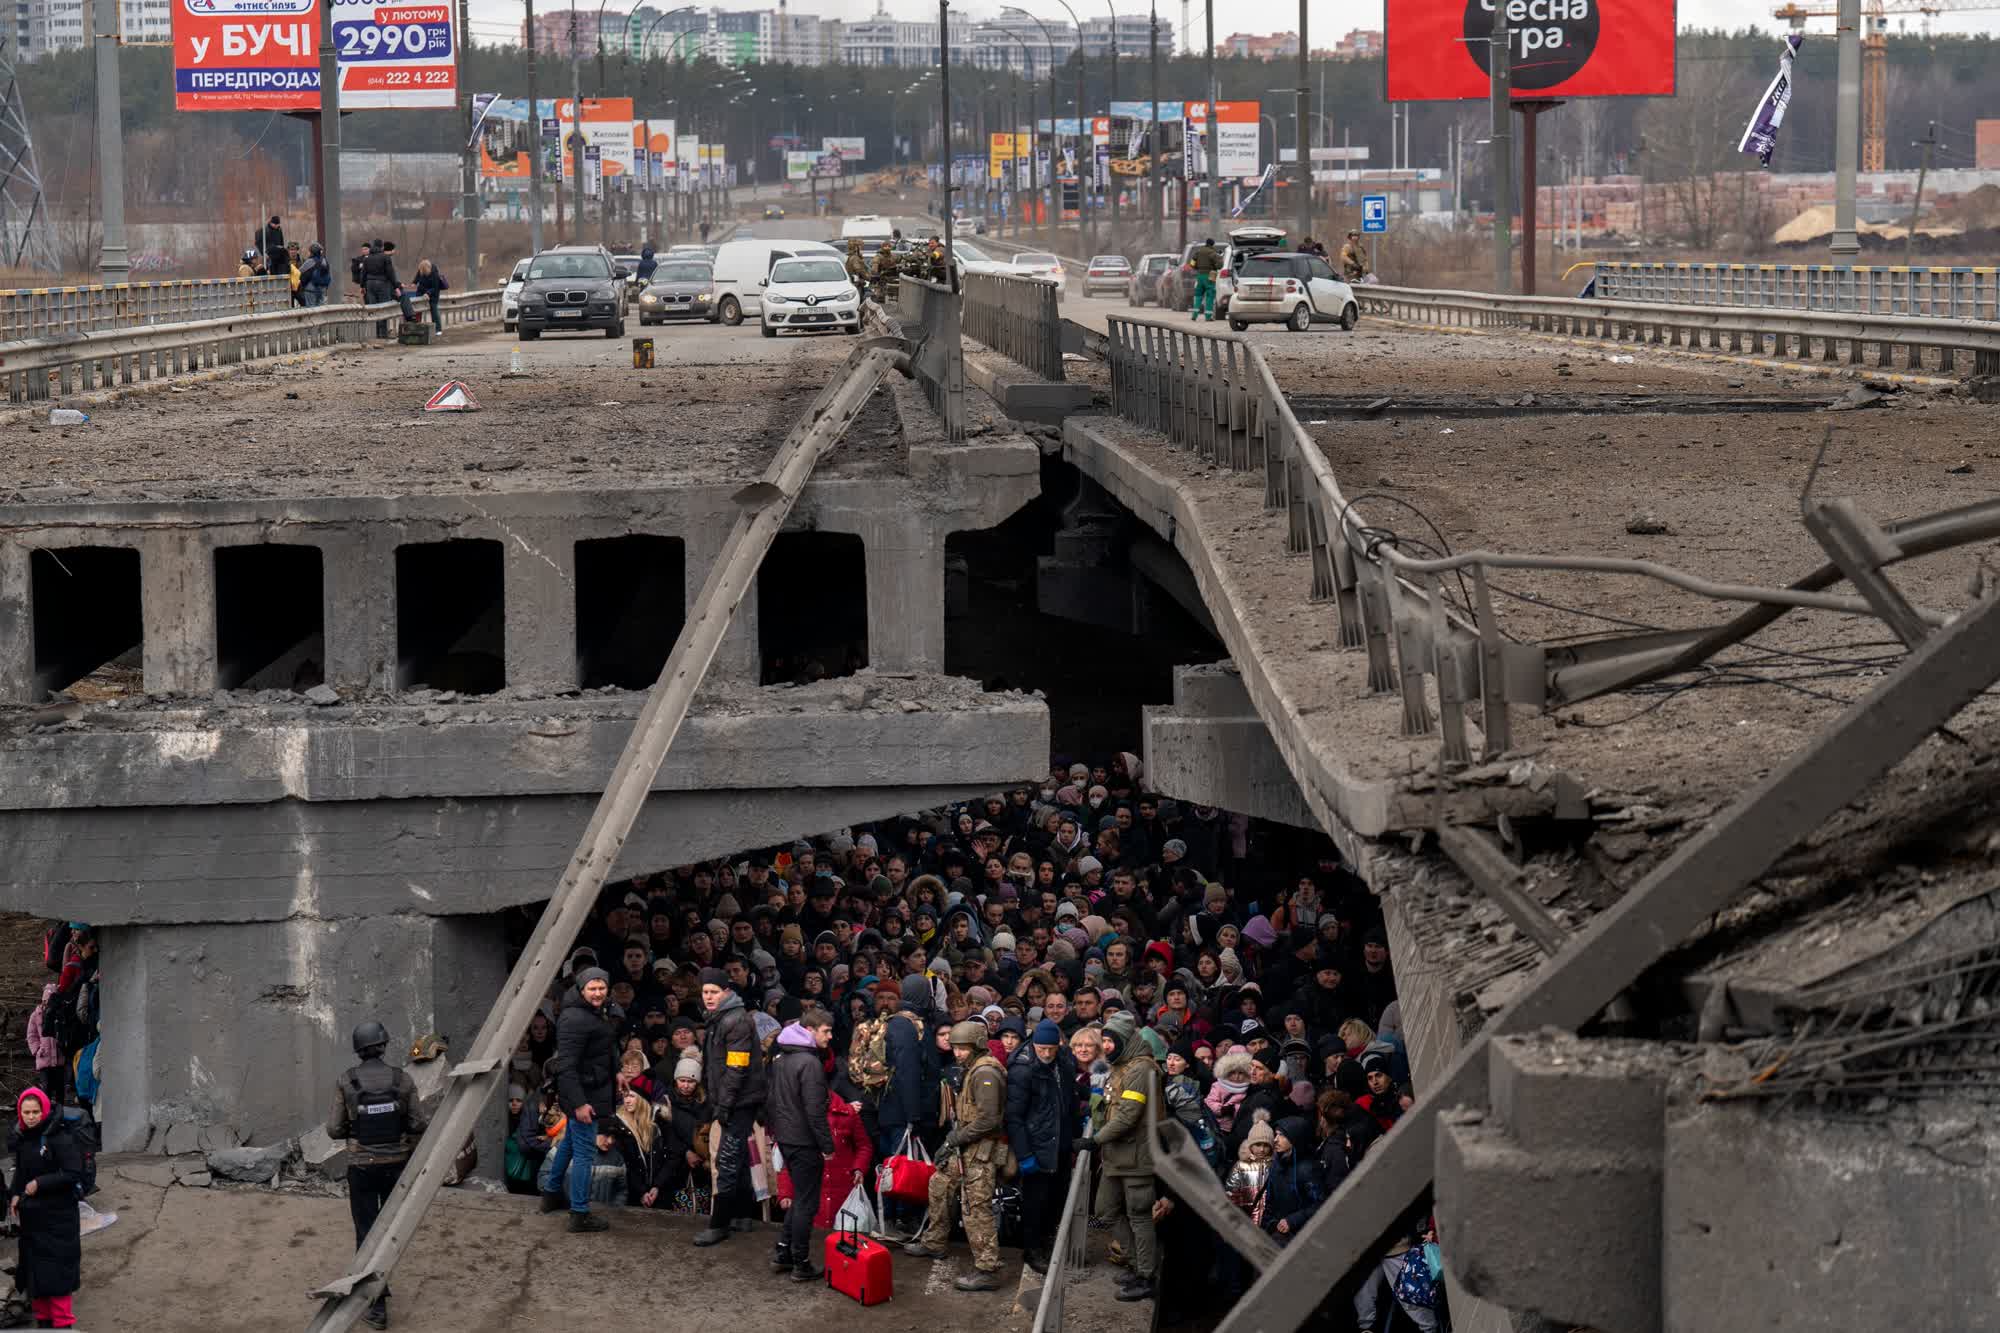 Cientos de personas que escapan de la guerra en Kyiv refugiadas bajo un puente destruido sobre el río Irpin en una imagen del 5 de marzo. (Emilio Morenatti/AP)